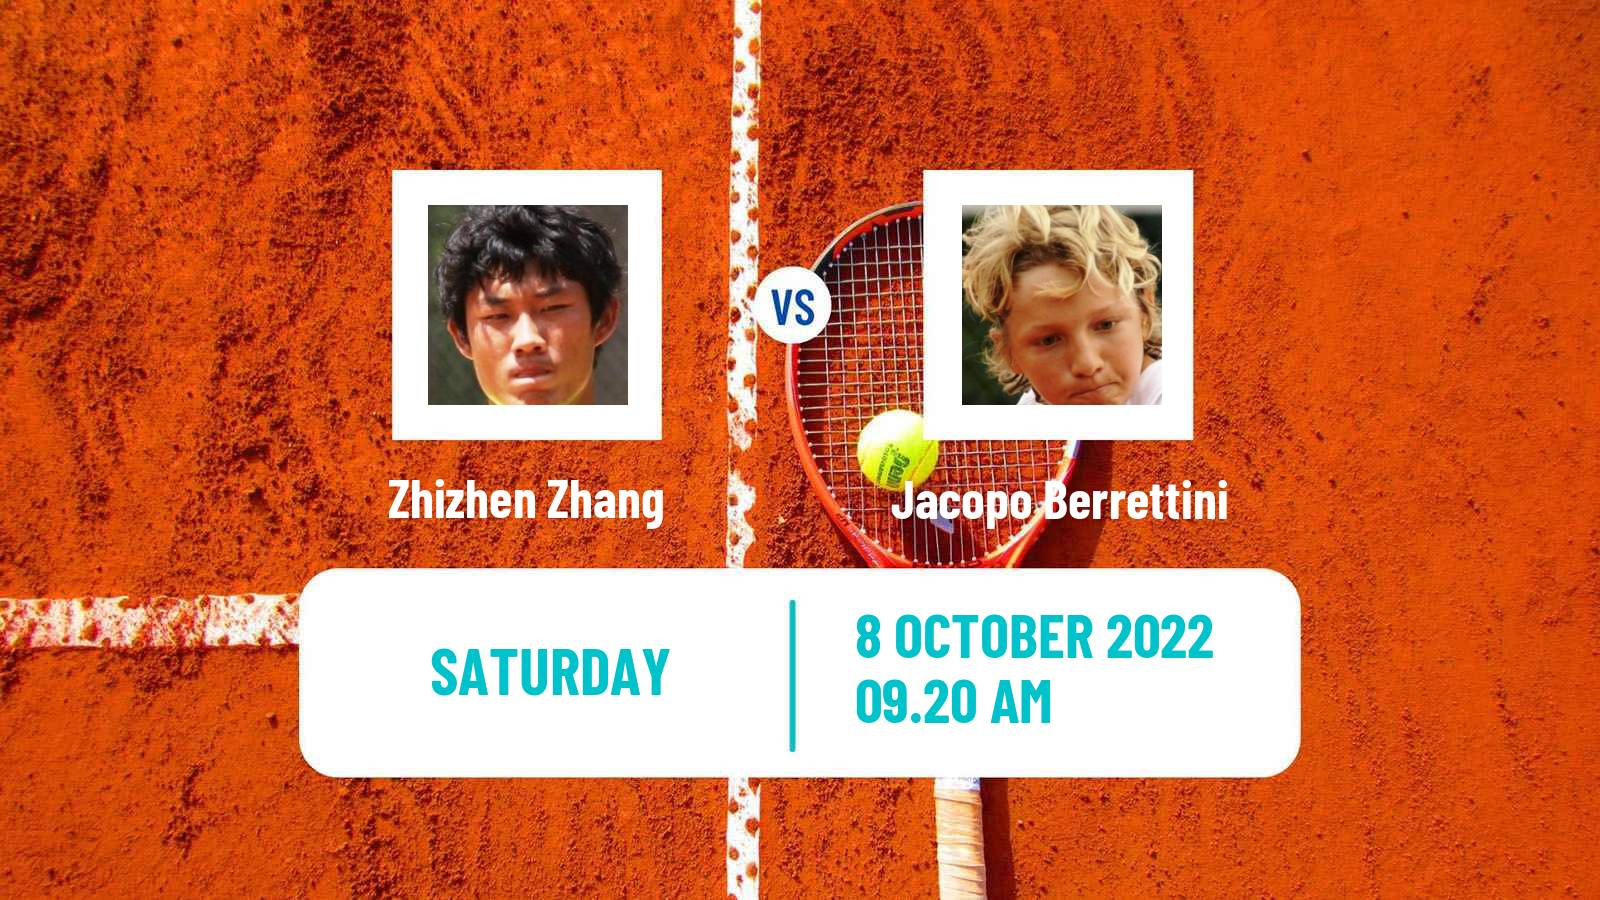 Tennis ATP Florence Zhizhen Zhang - Jacopo Berrettini